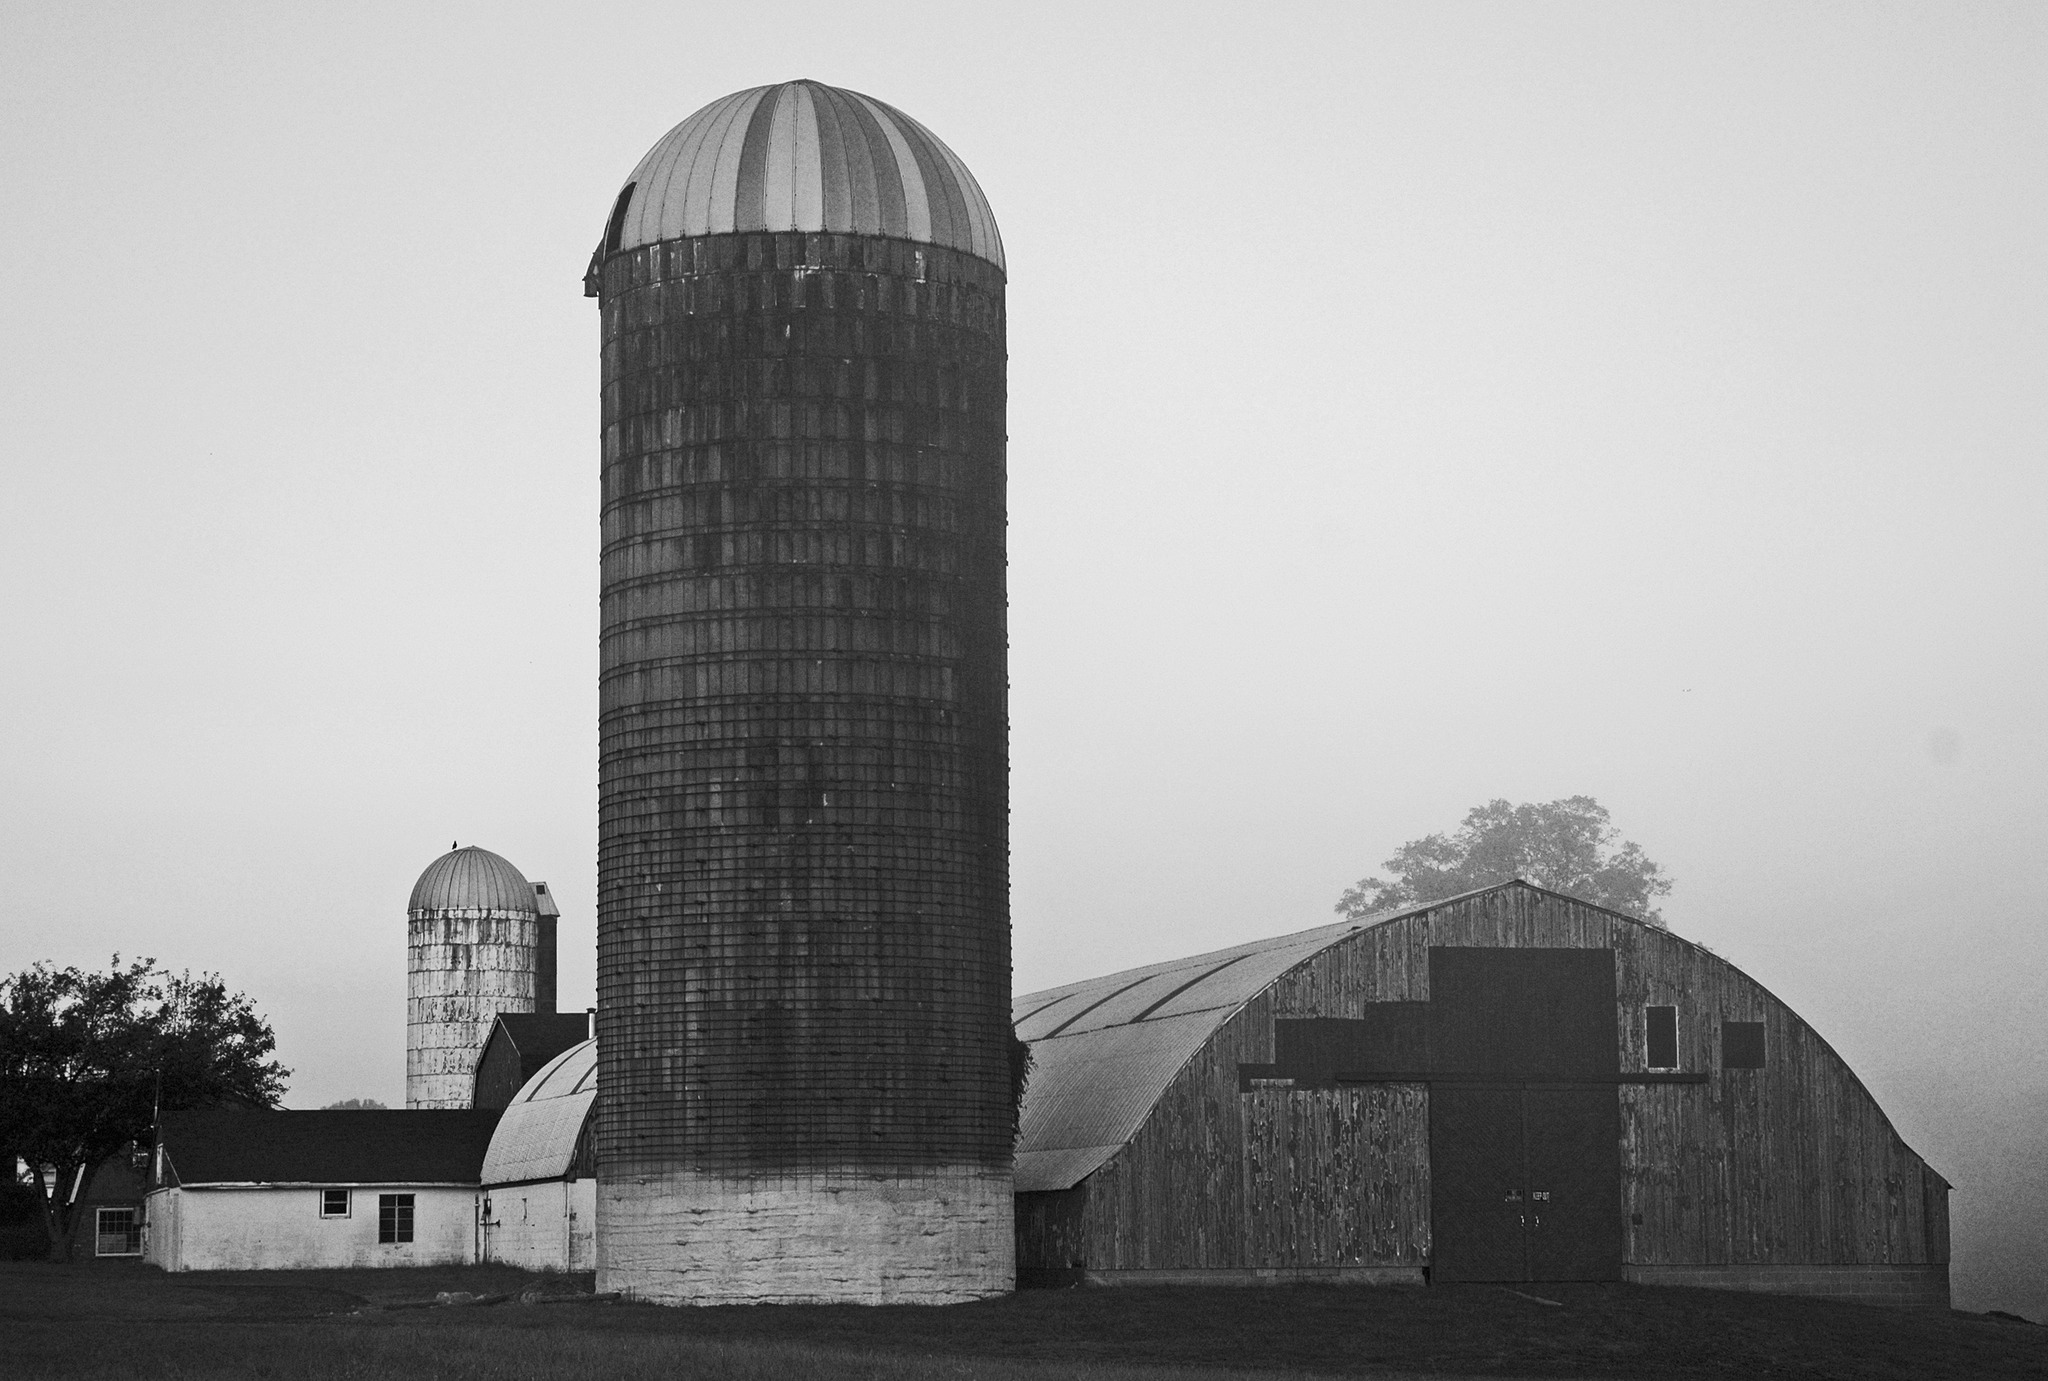 Working Farm until 2001